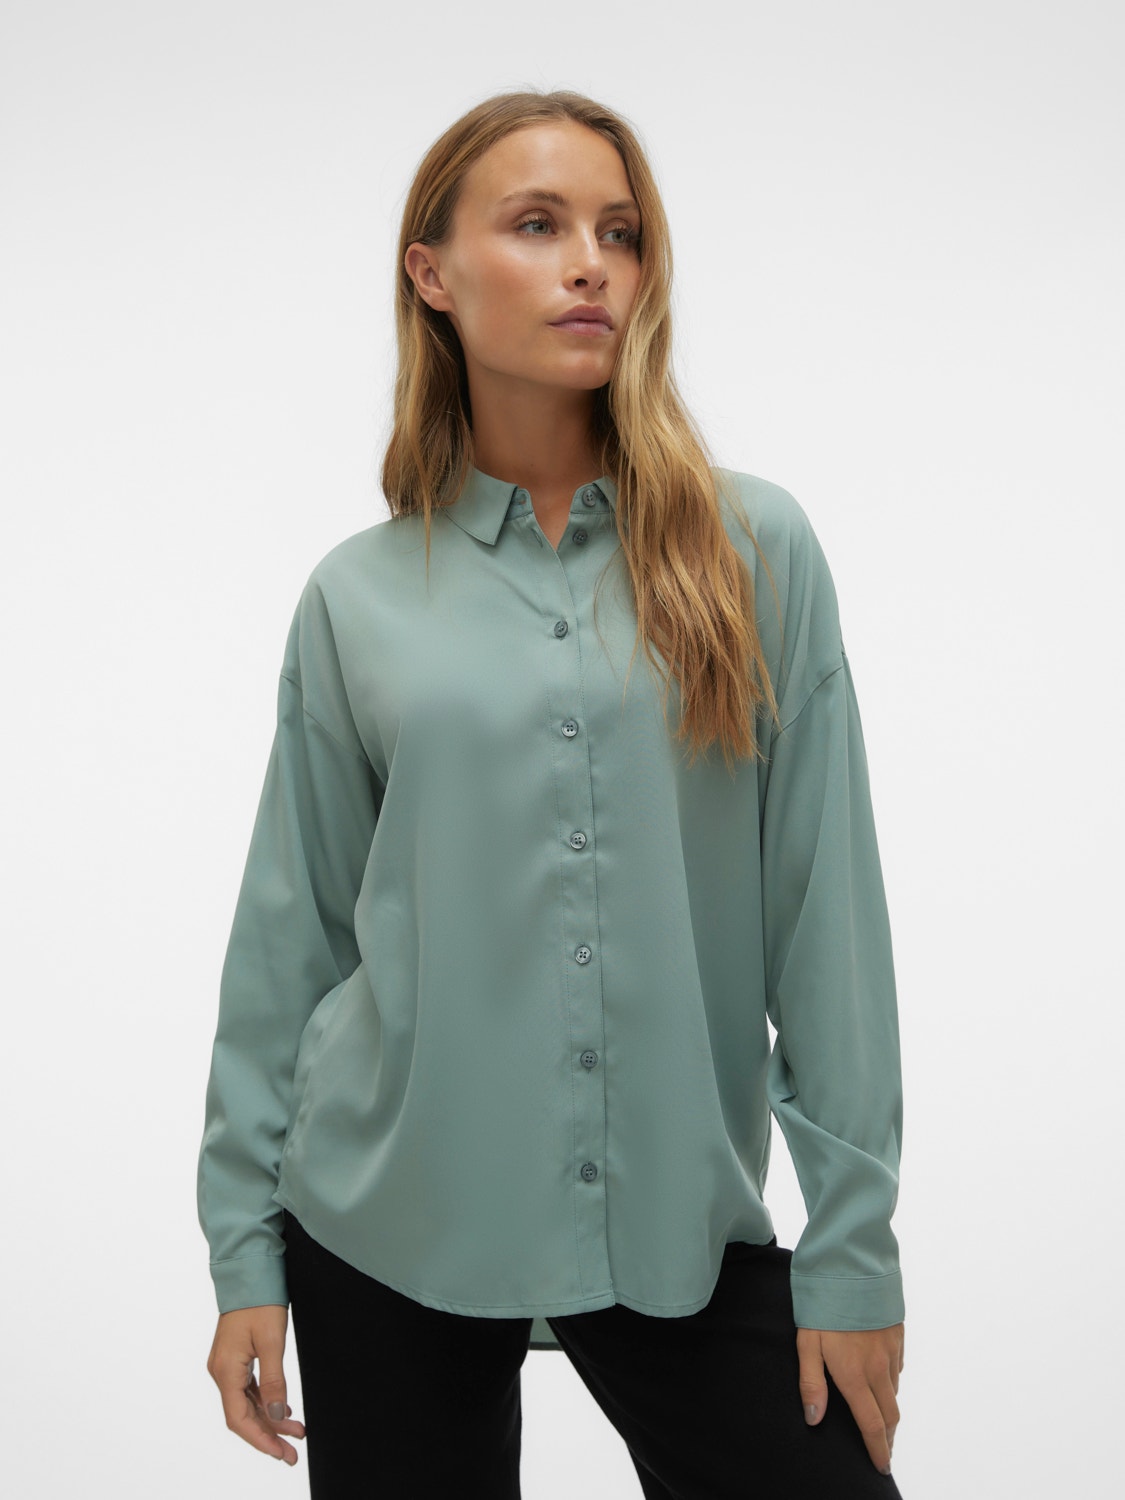 Vero Moda VMKIRA Shirt -Chinois Green - 10302721